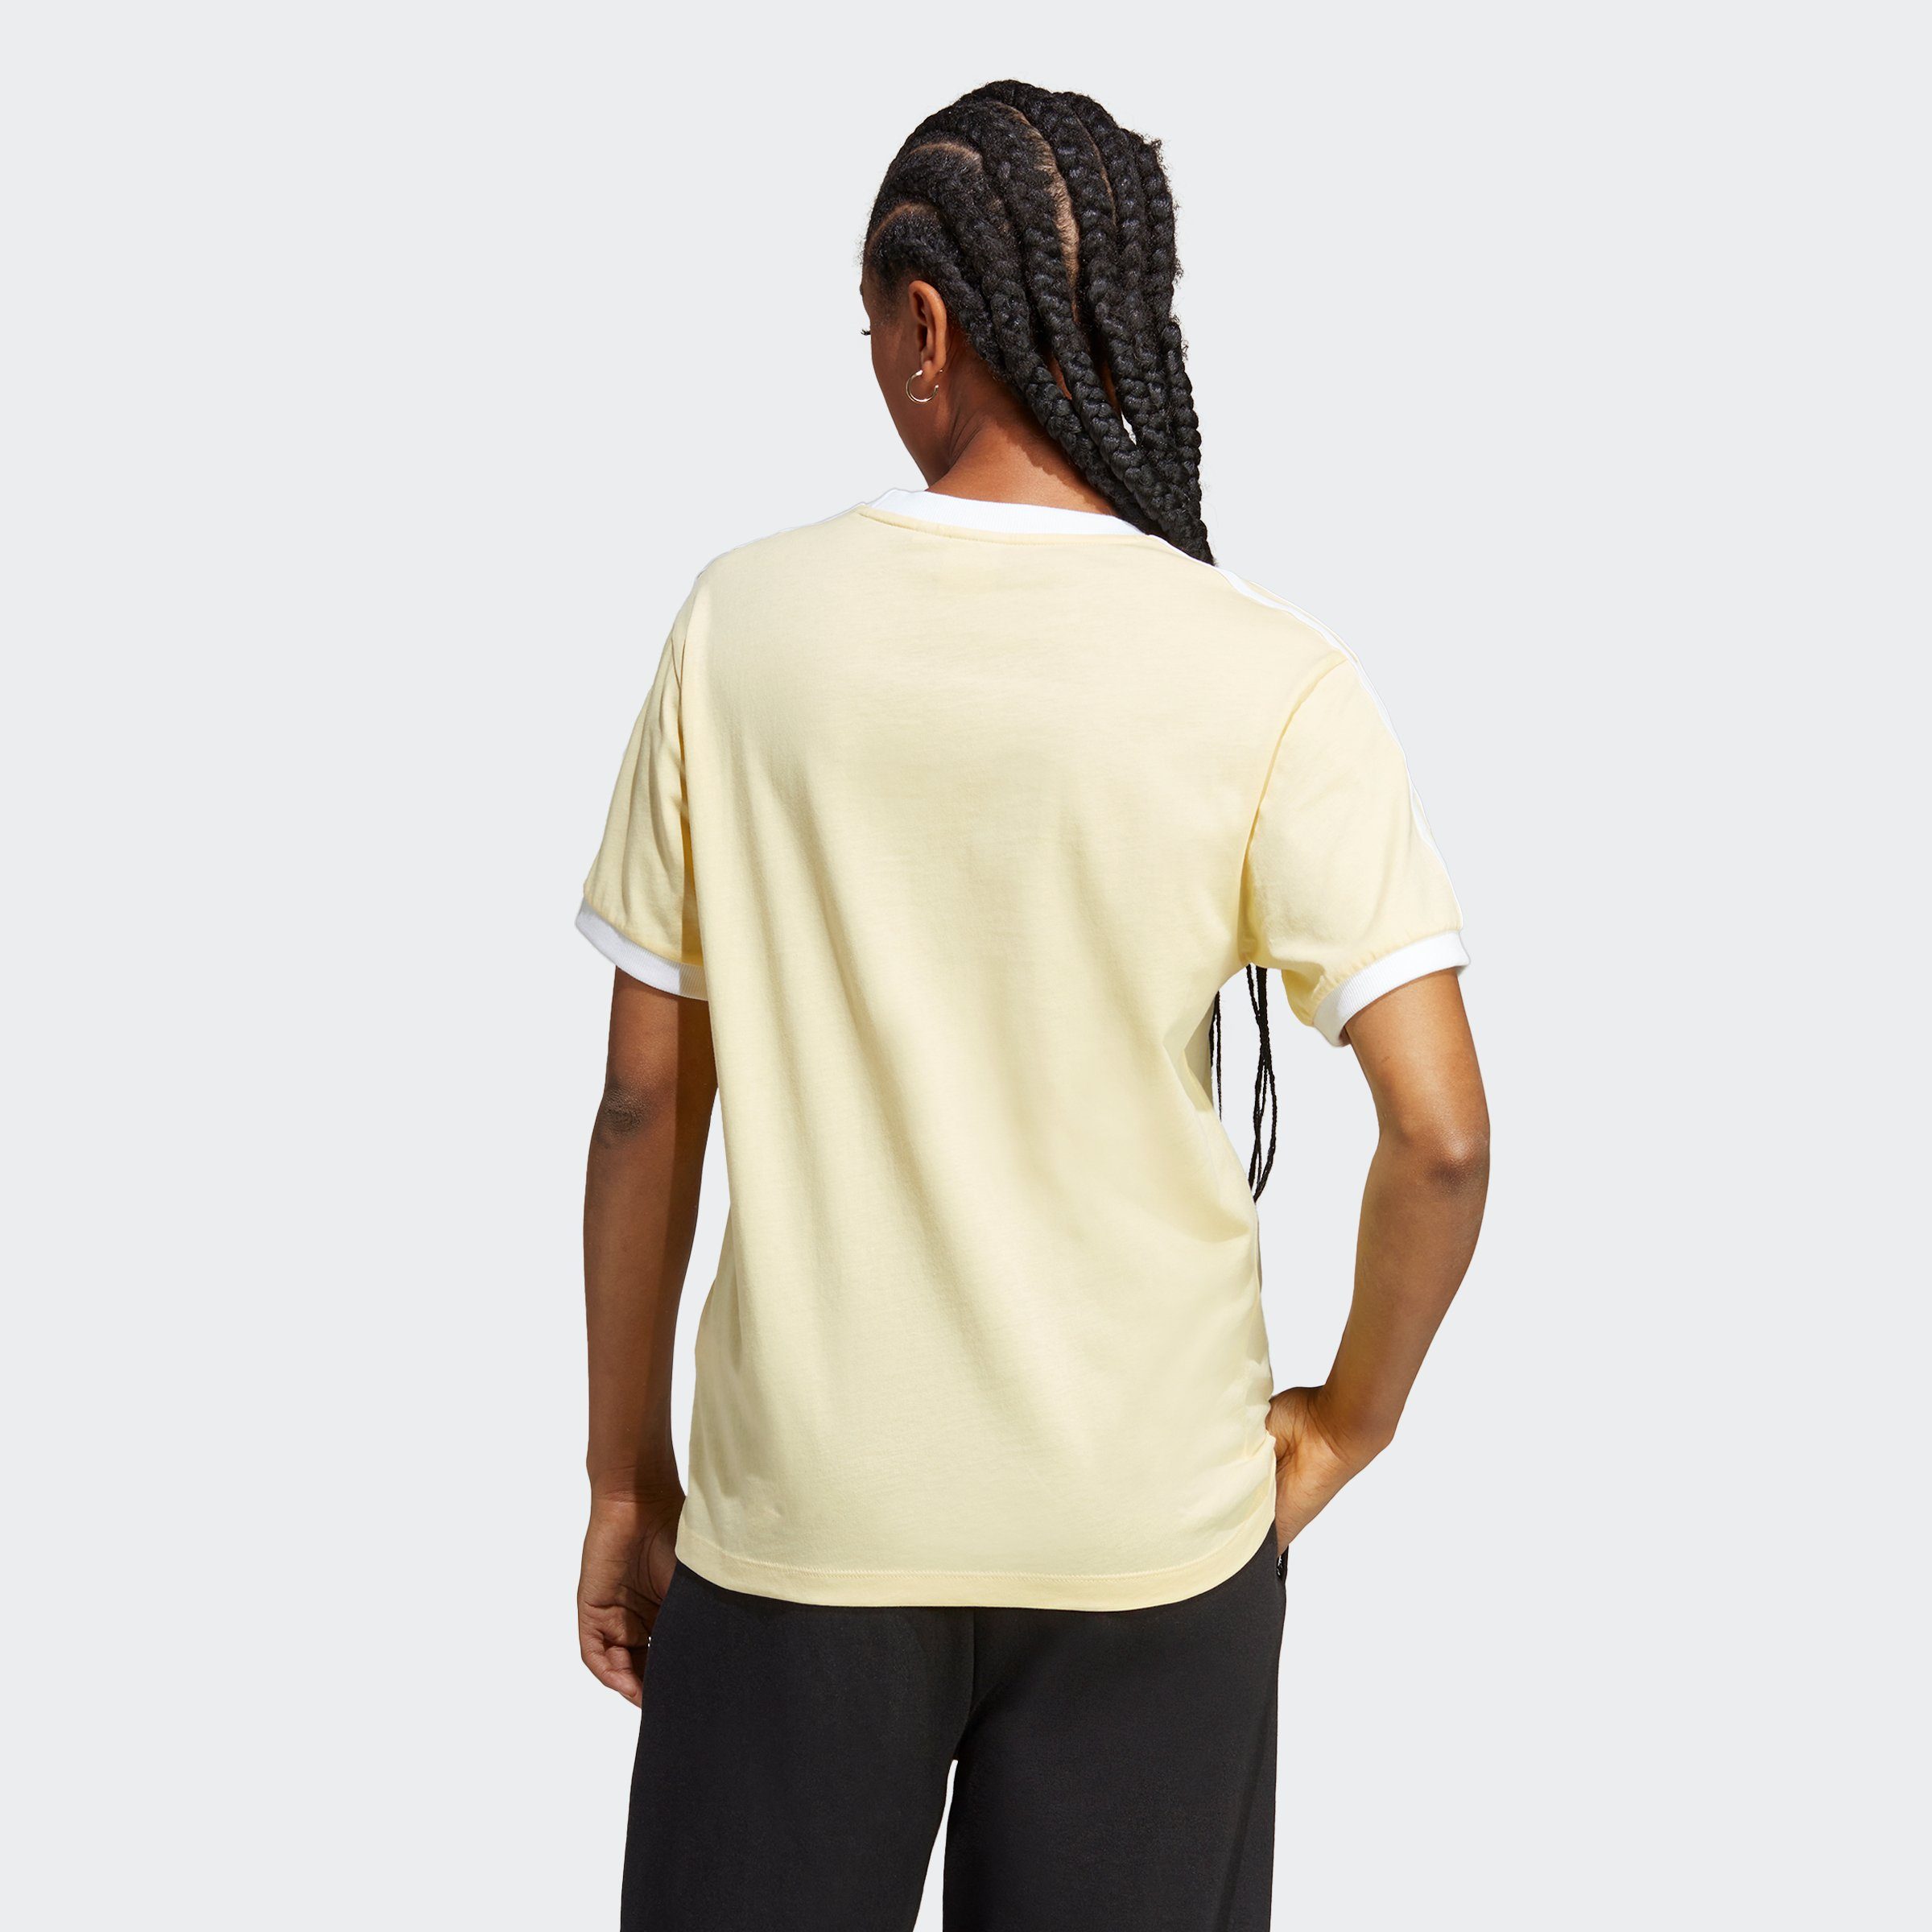 Originals CLASSICS T-Shirt Yellow ADICOLOR 3-STREIFEN adidas Almost